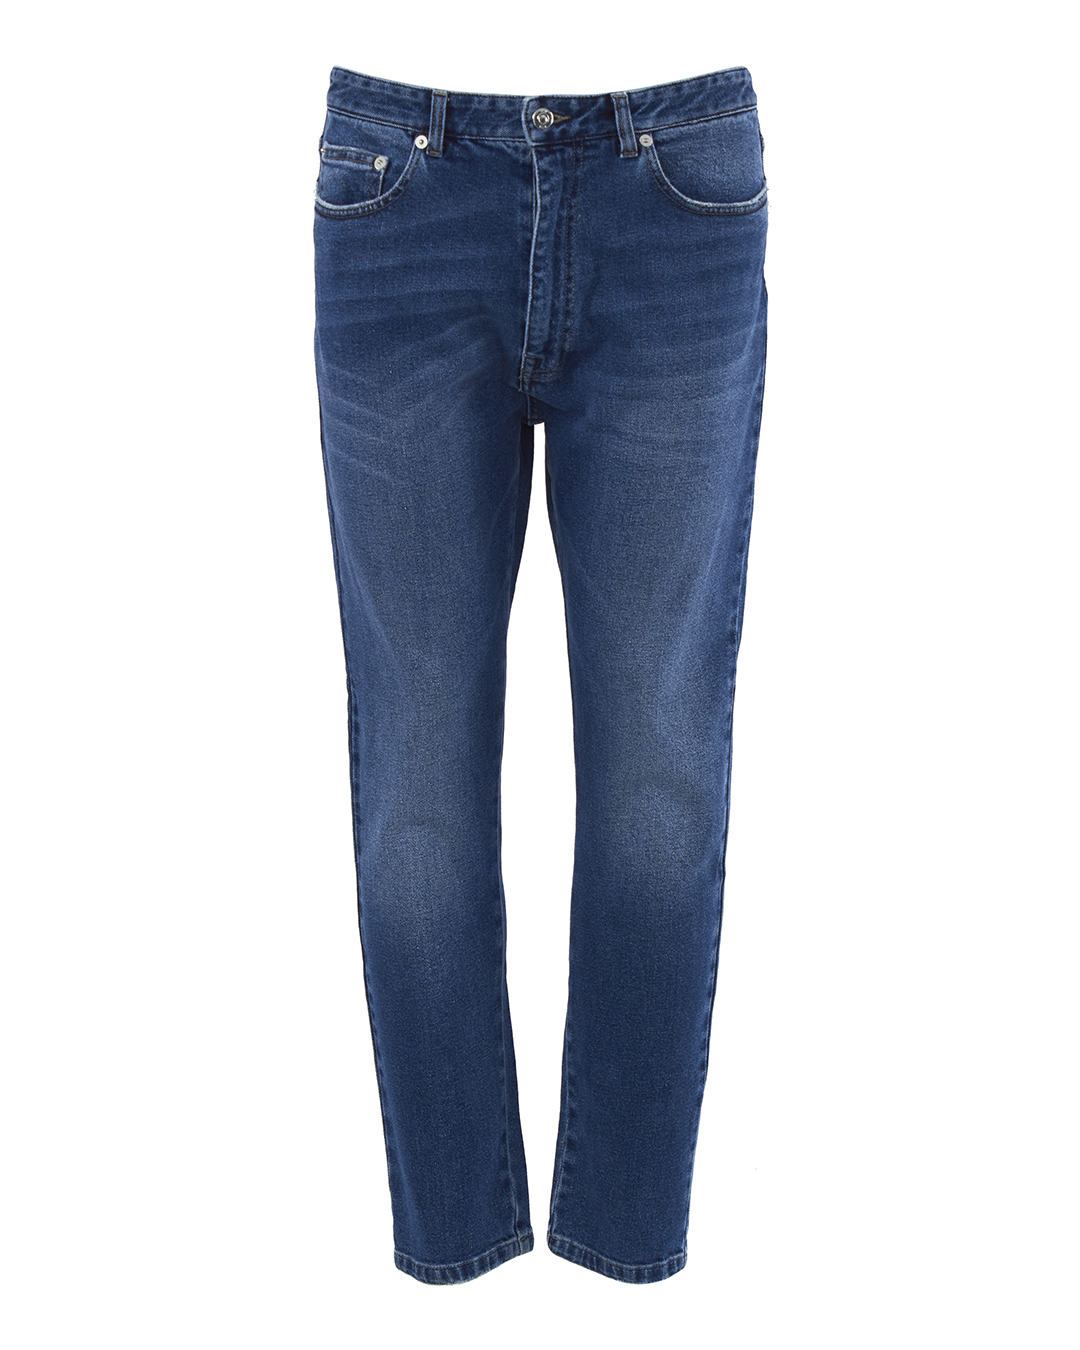 джинсы № 21 N1M2202 синий 34, размер 34 - фото 1